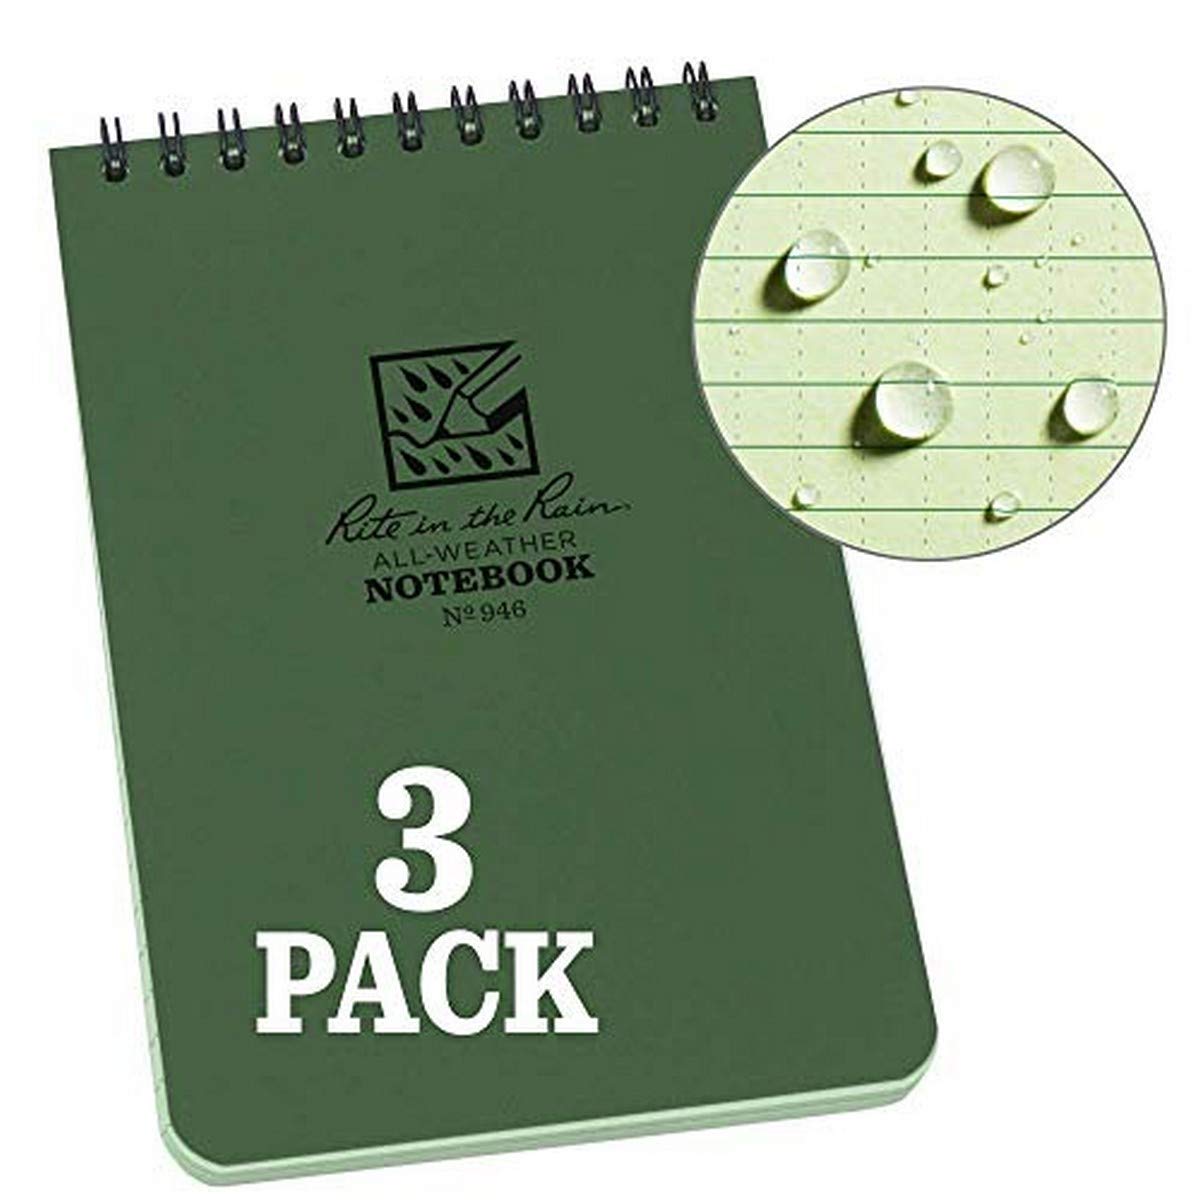 Rite In The Rain Wetterfestes Notizbuch mit Spiralbindung, 10,2 x 15,2 cm, grüner Einband, Universal-Muster, 3er-Pack (Nr. 946-3)